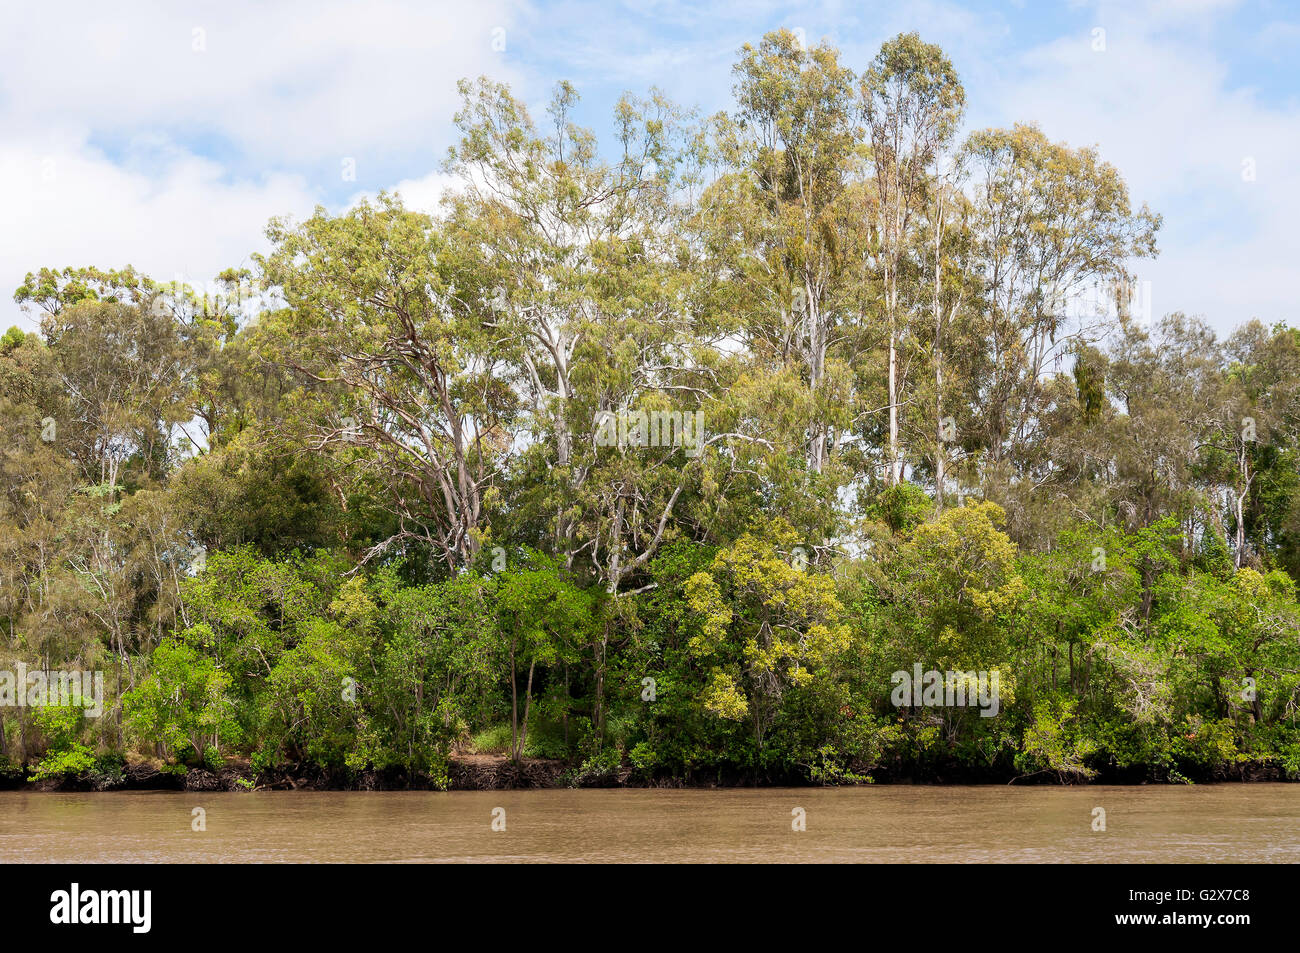 Mangrove vegetation on banks of Brisbane River, Fig Tree Pocket, Brisbane, Queensland, Australia Stock Photo